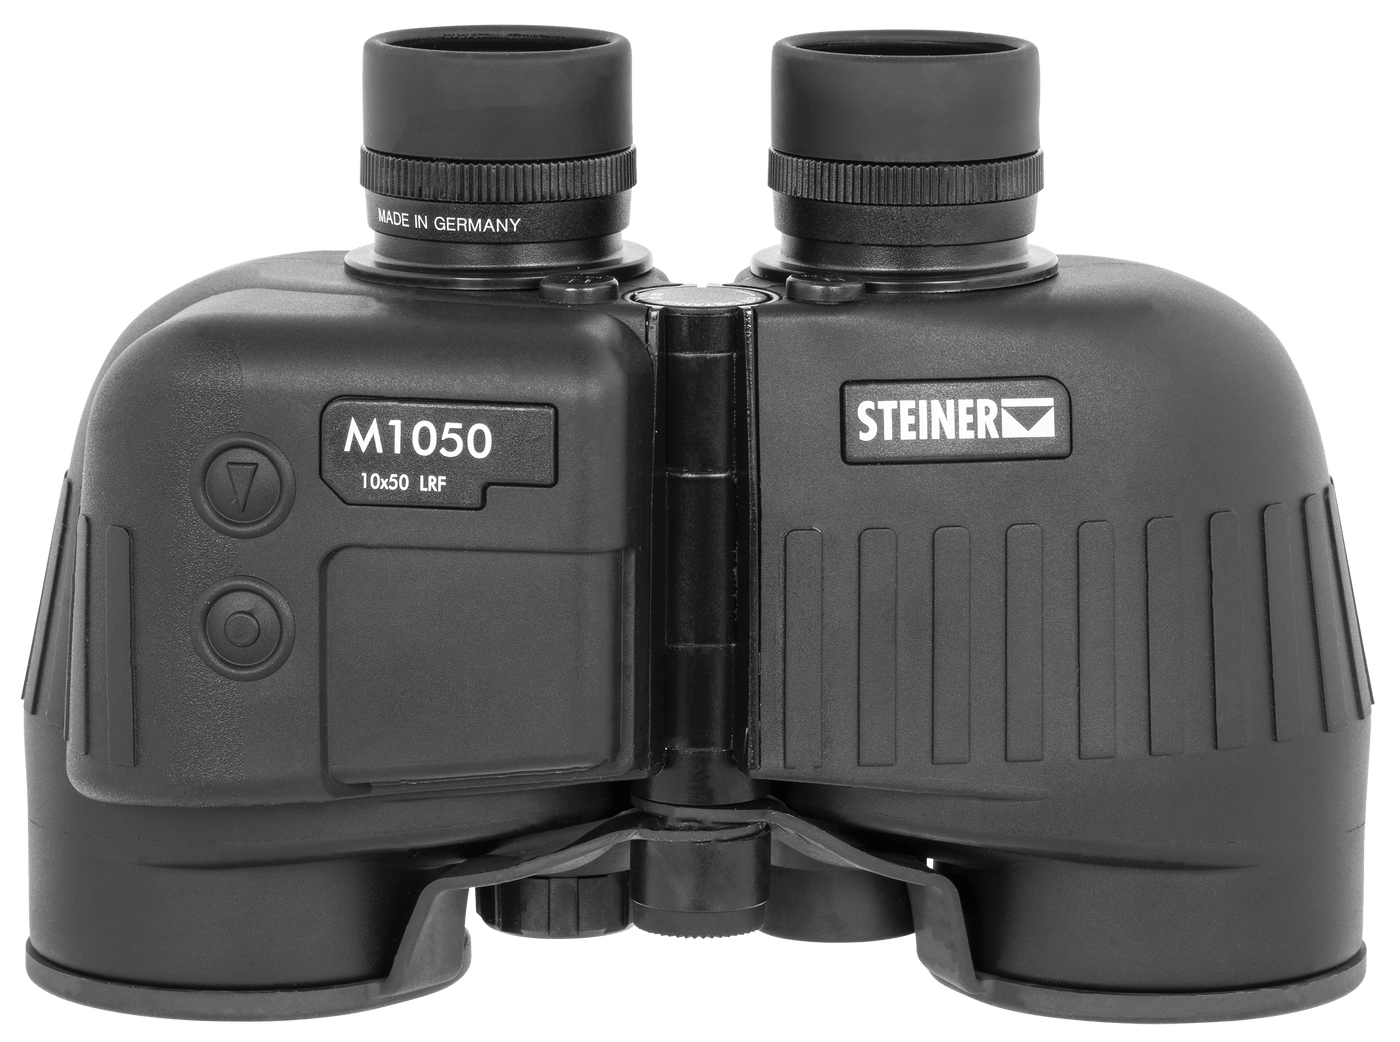 Steiner Steiner M1050, Steiner 2682          10x50 Military M1050 Lrf Optics